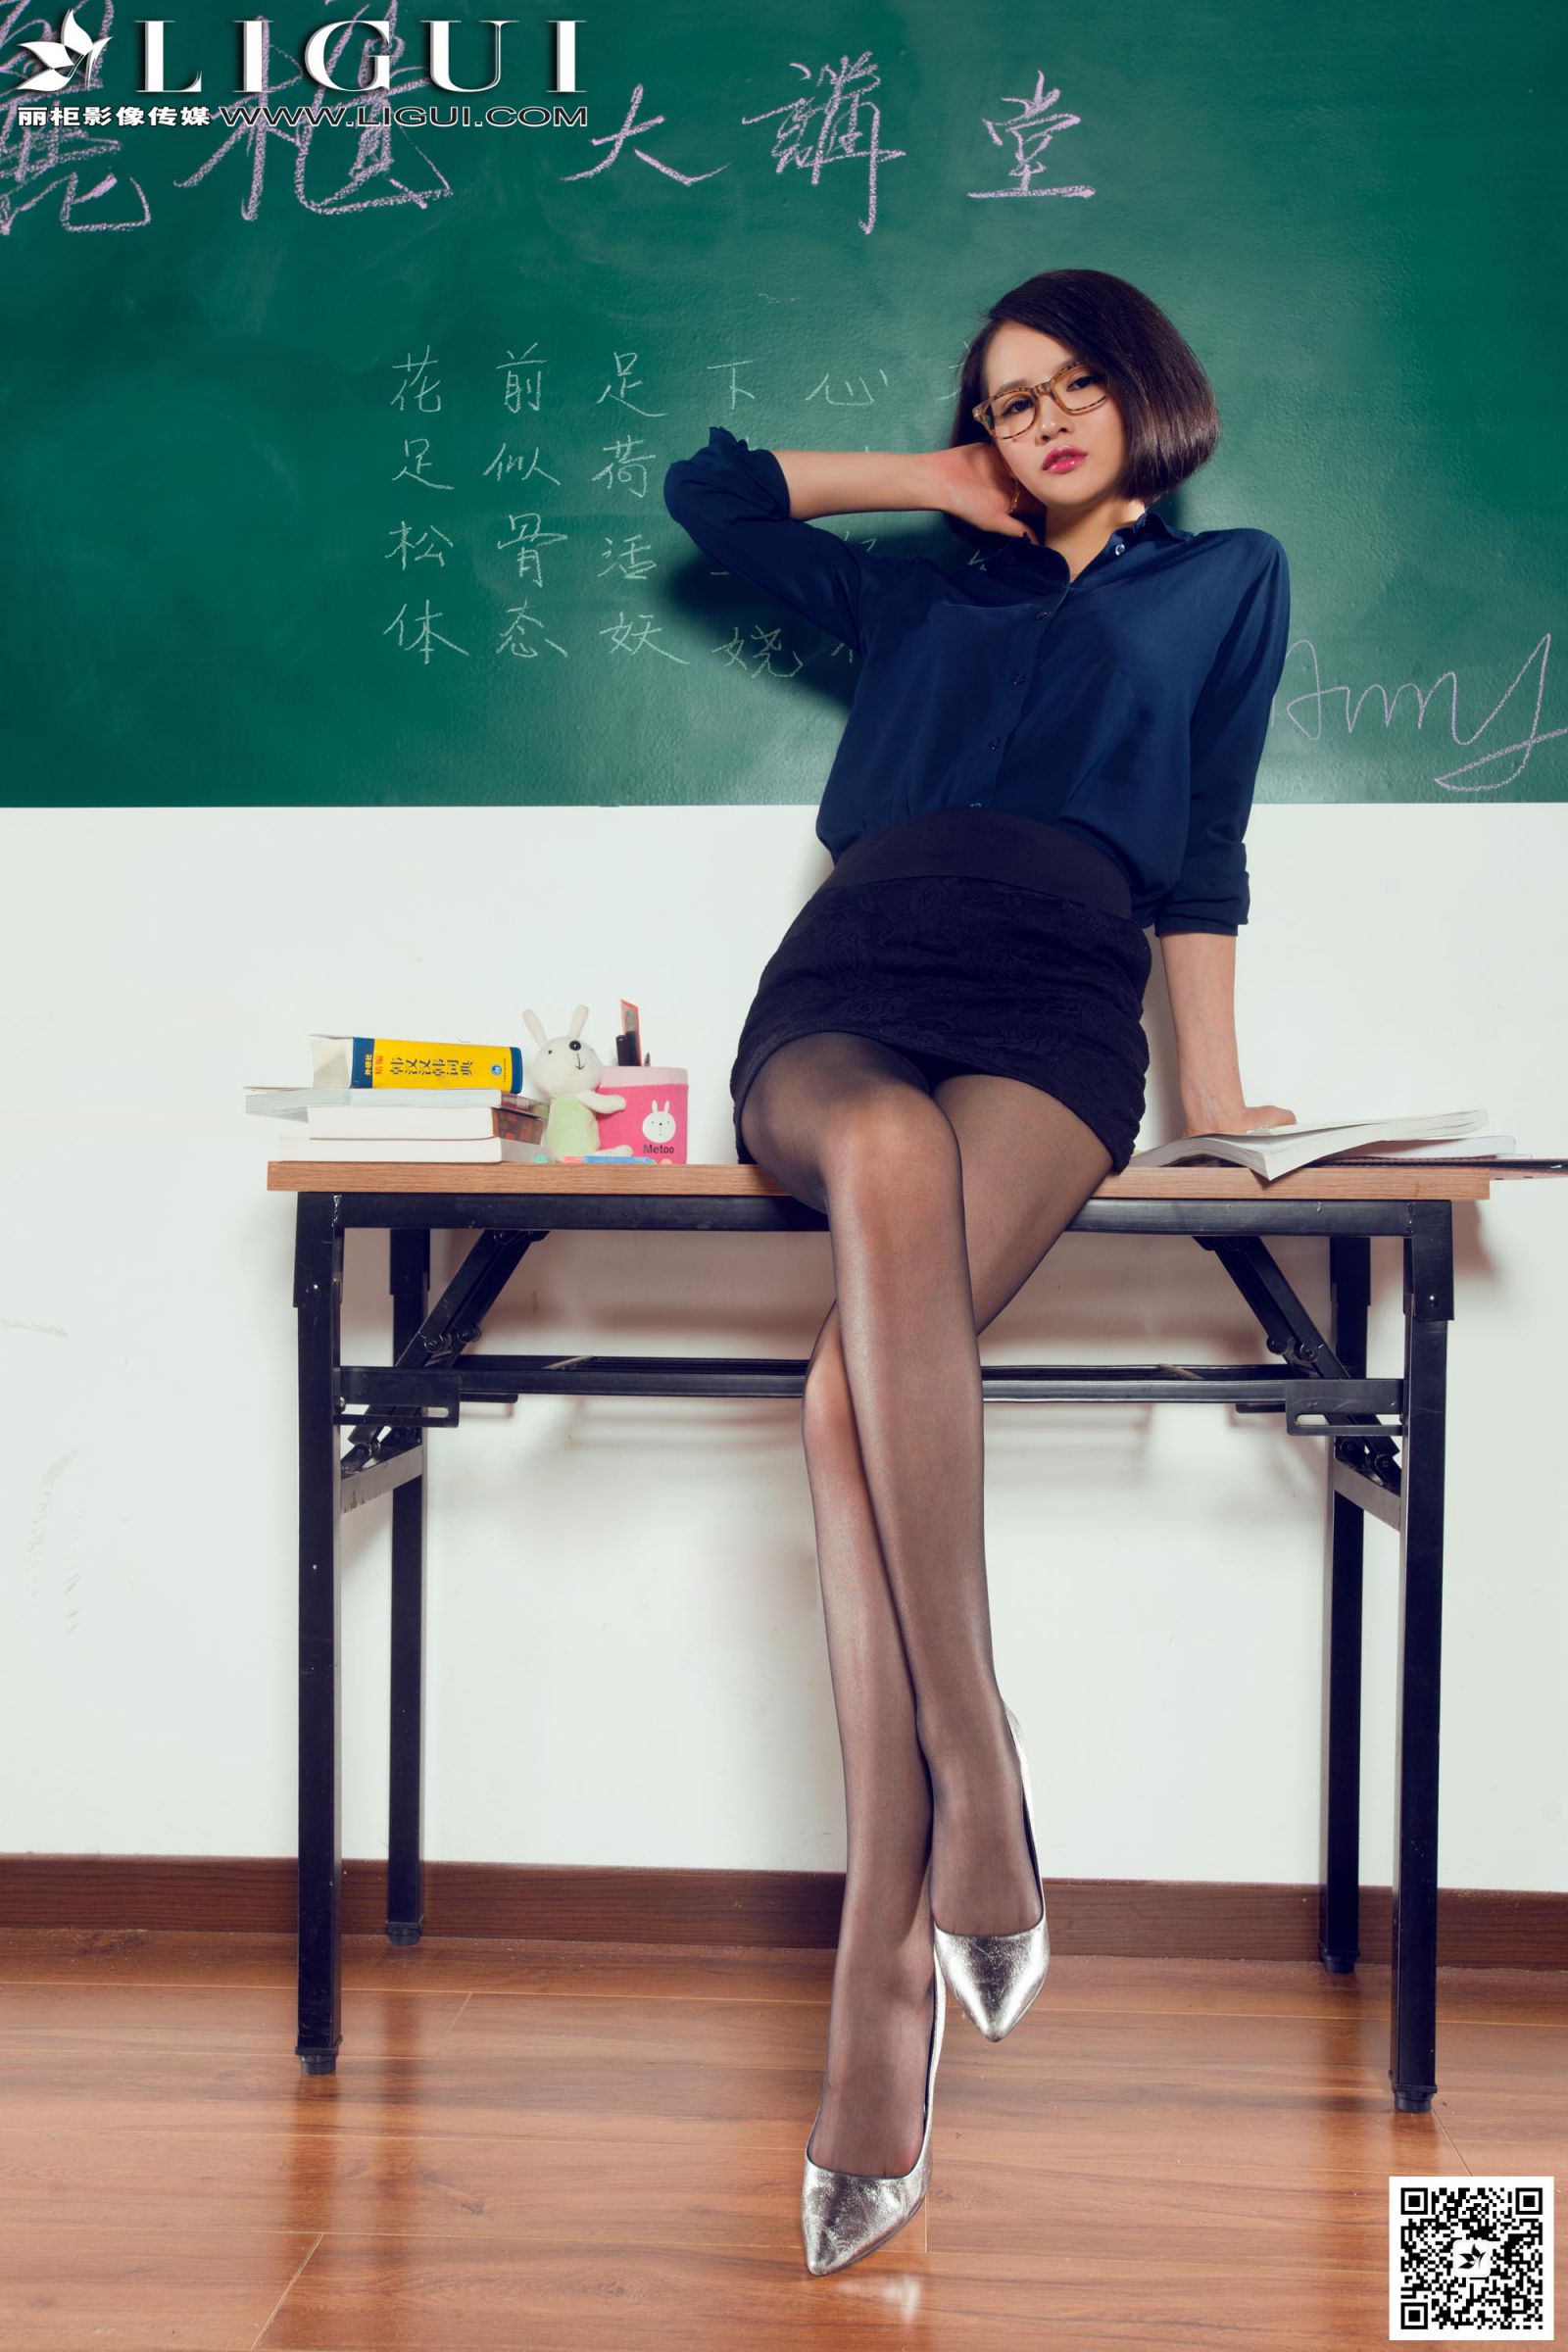 [Ligui丽柜] AMY - 教室里的黑丝女教师